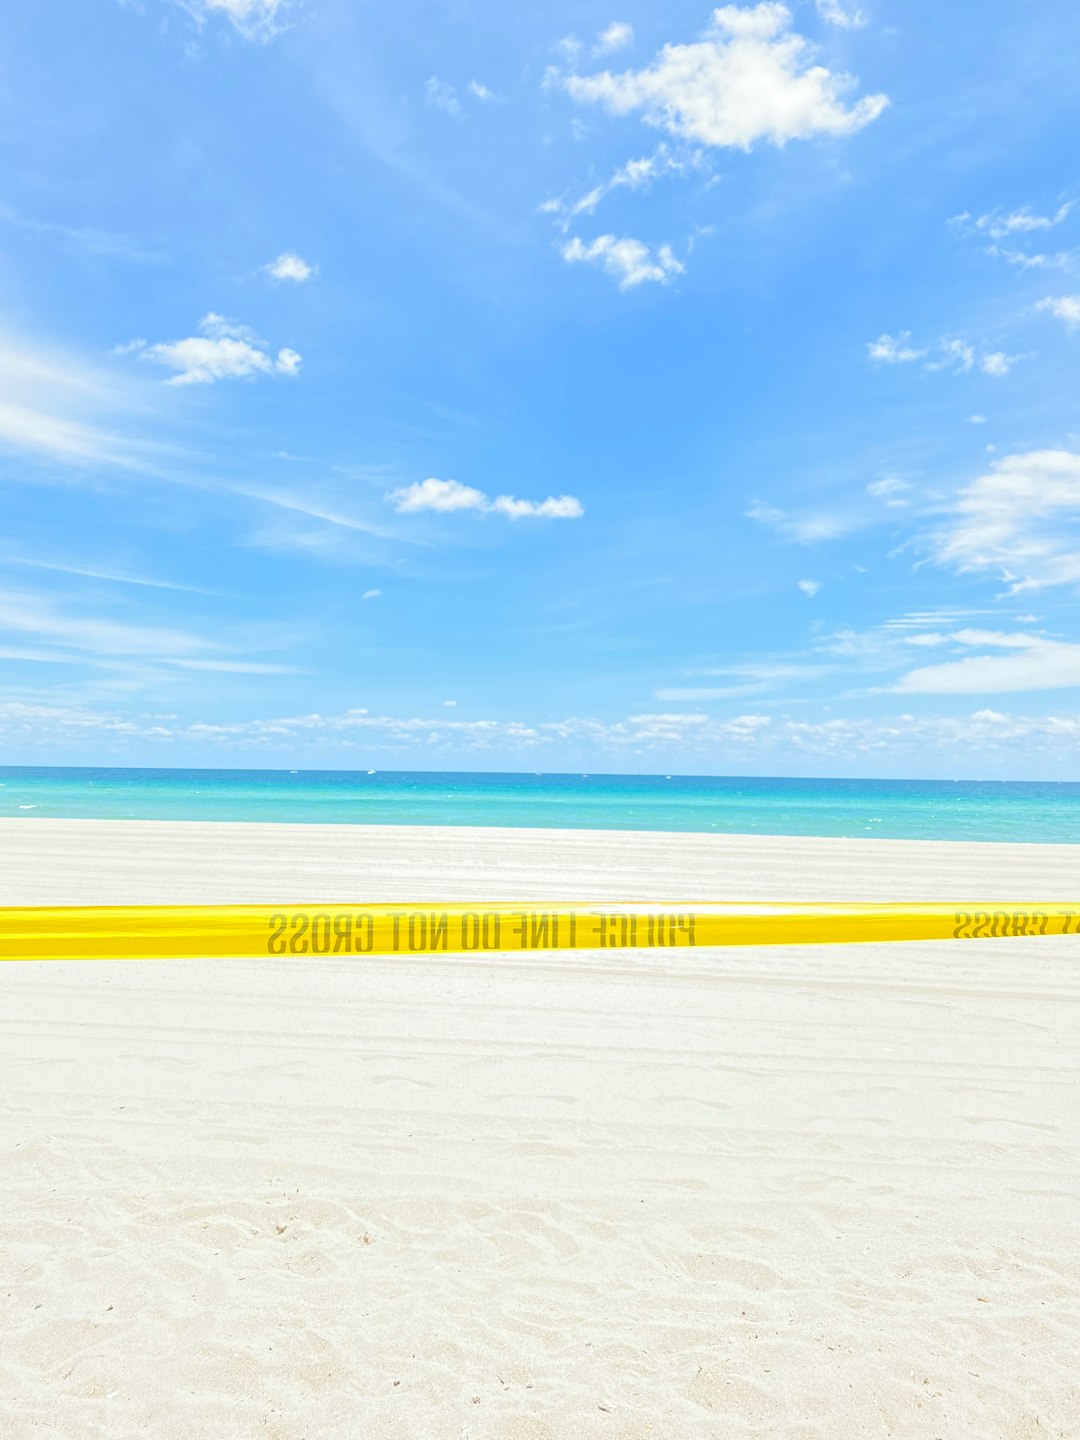 Ocean photo spot Sunny Isles Beach Miami